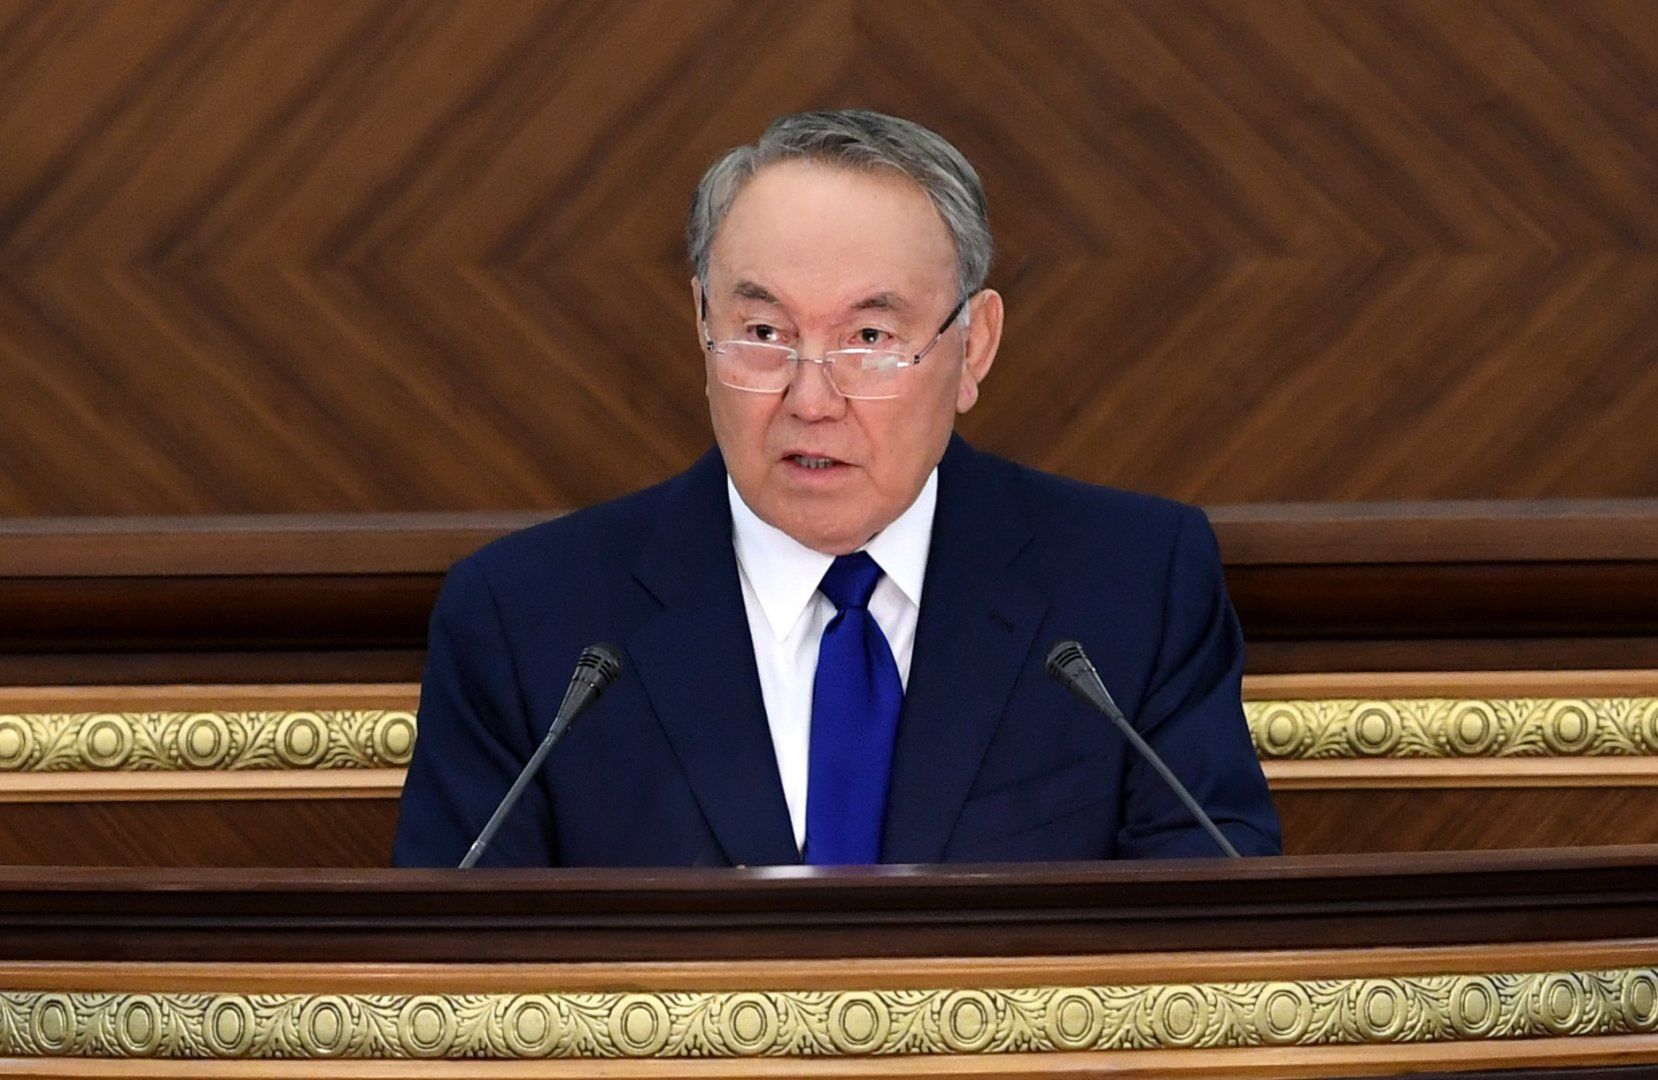 президент казахстана